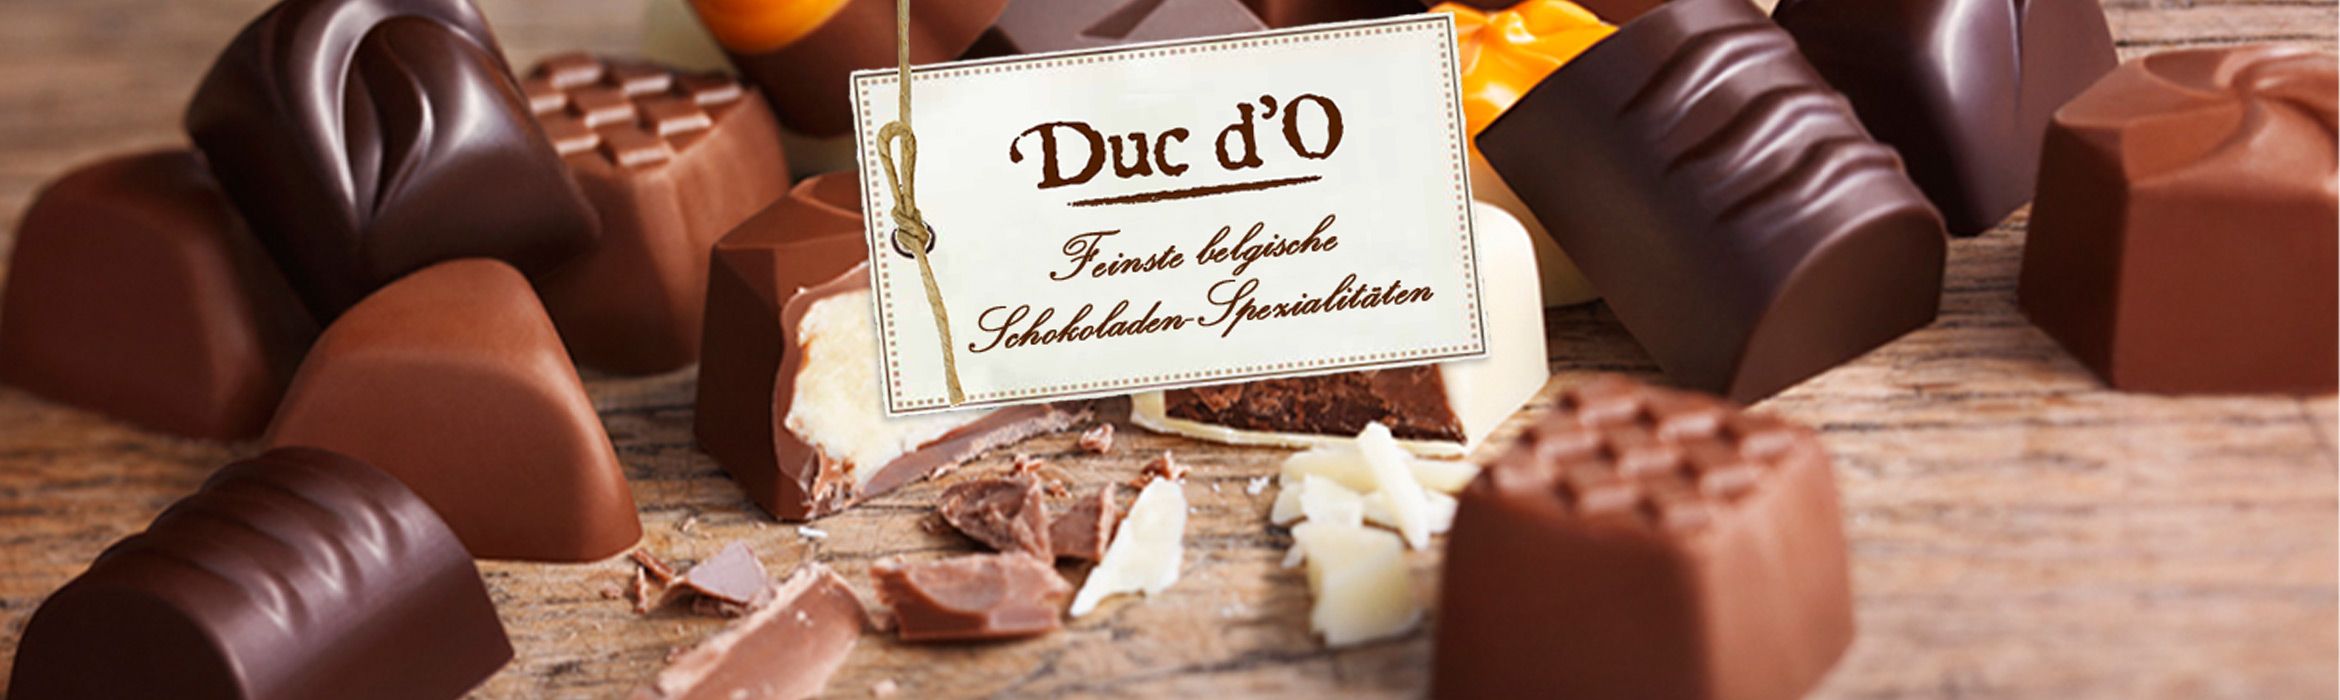 DUC D'O Schokoladenspezialitäten